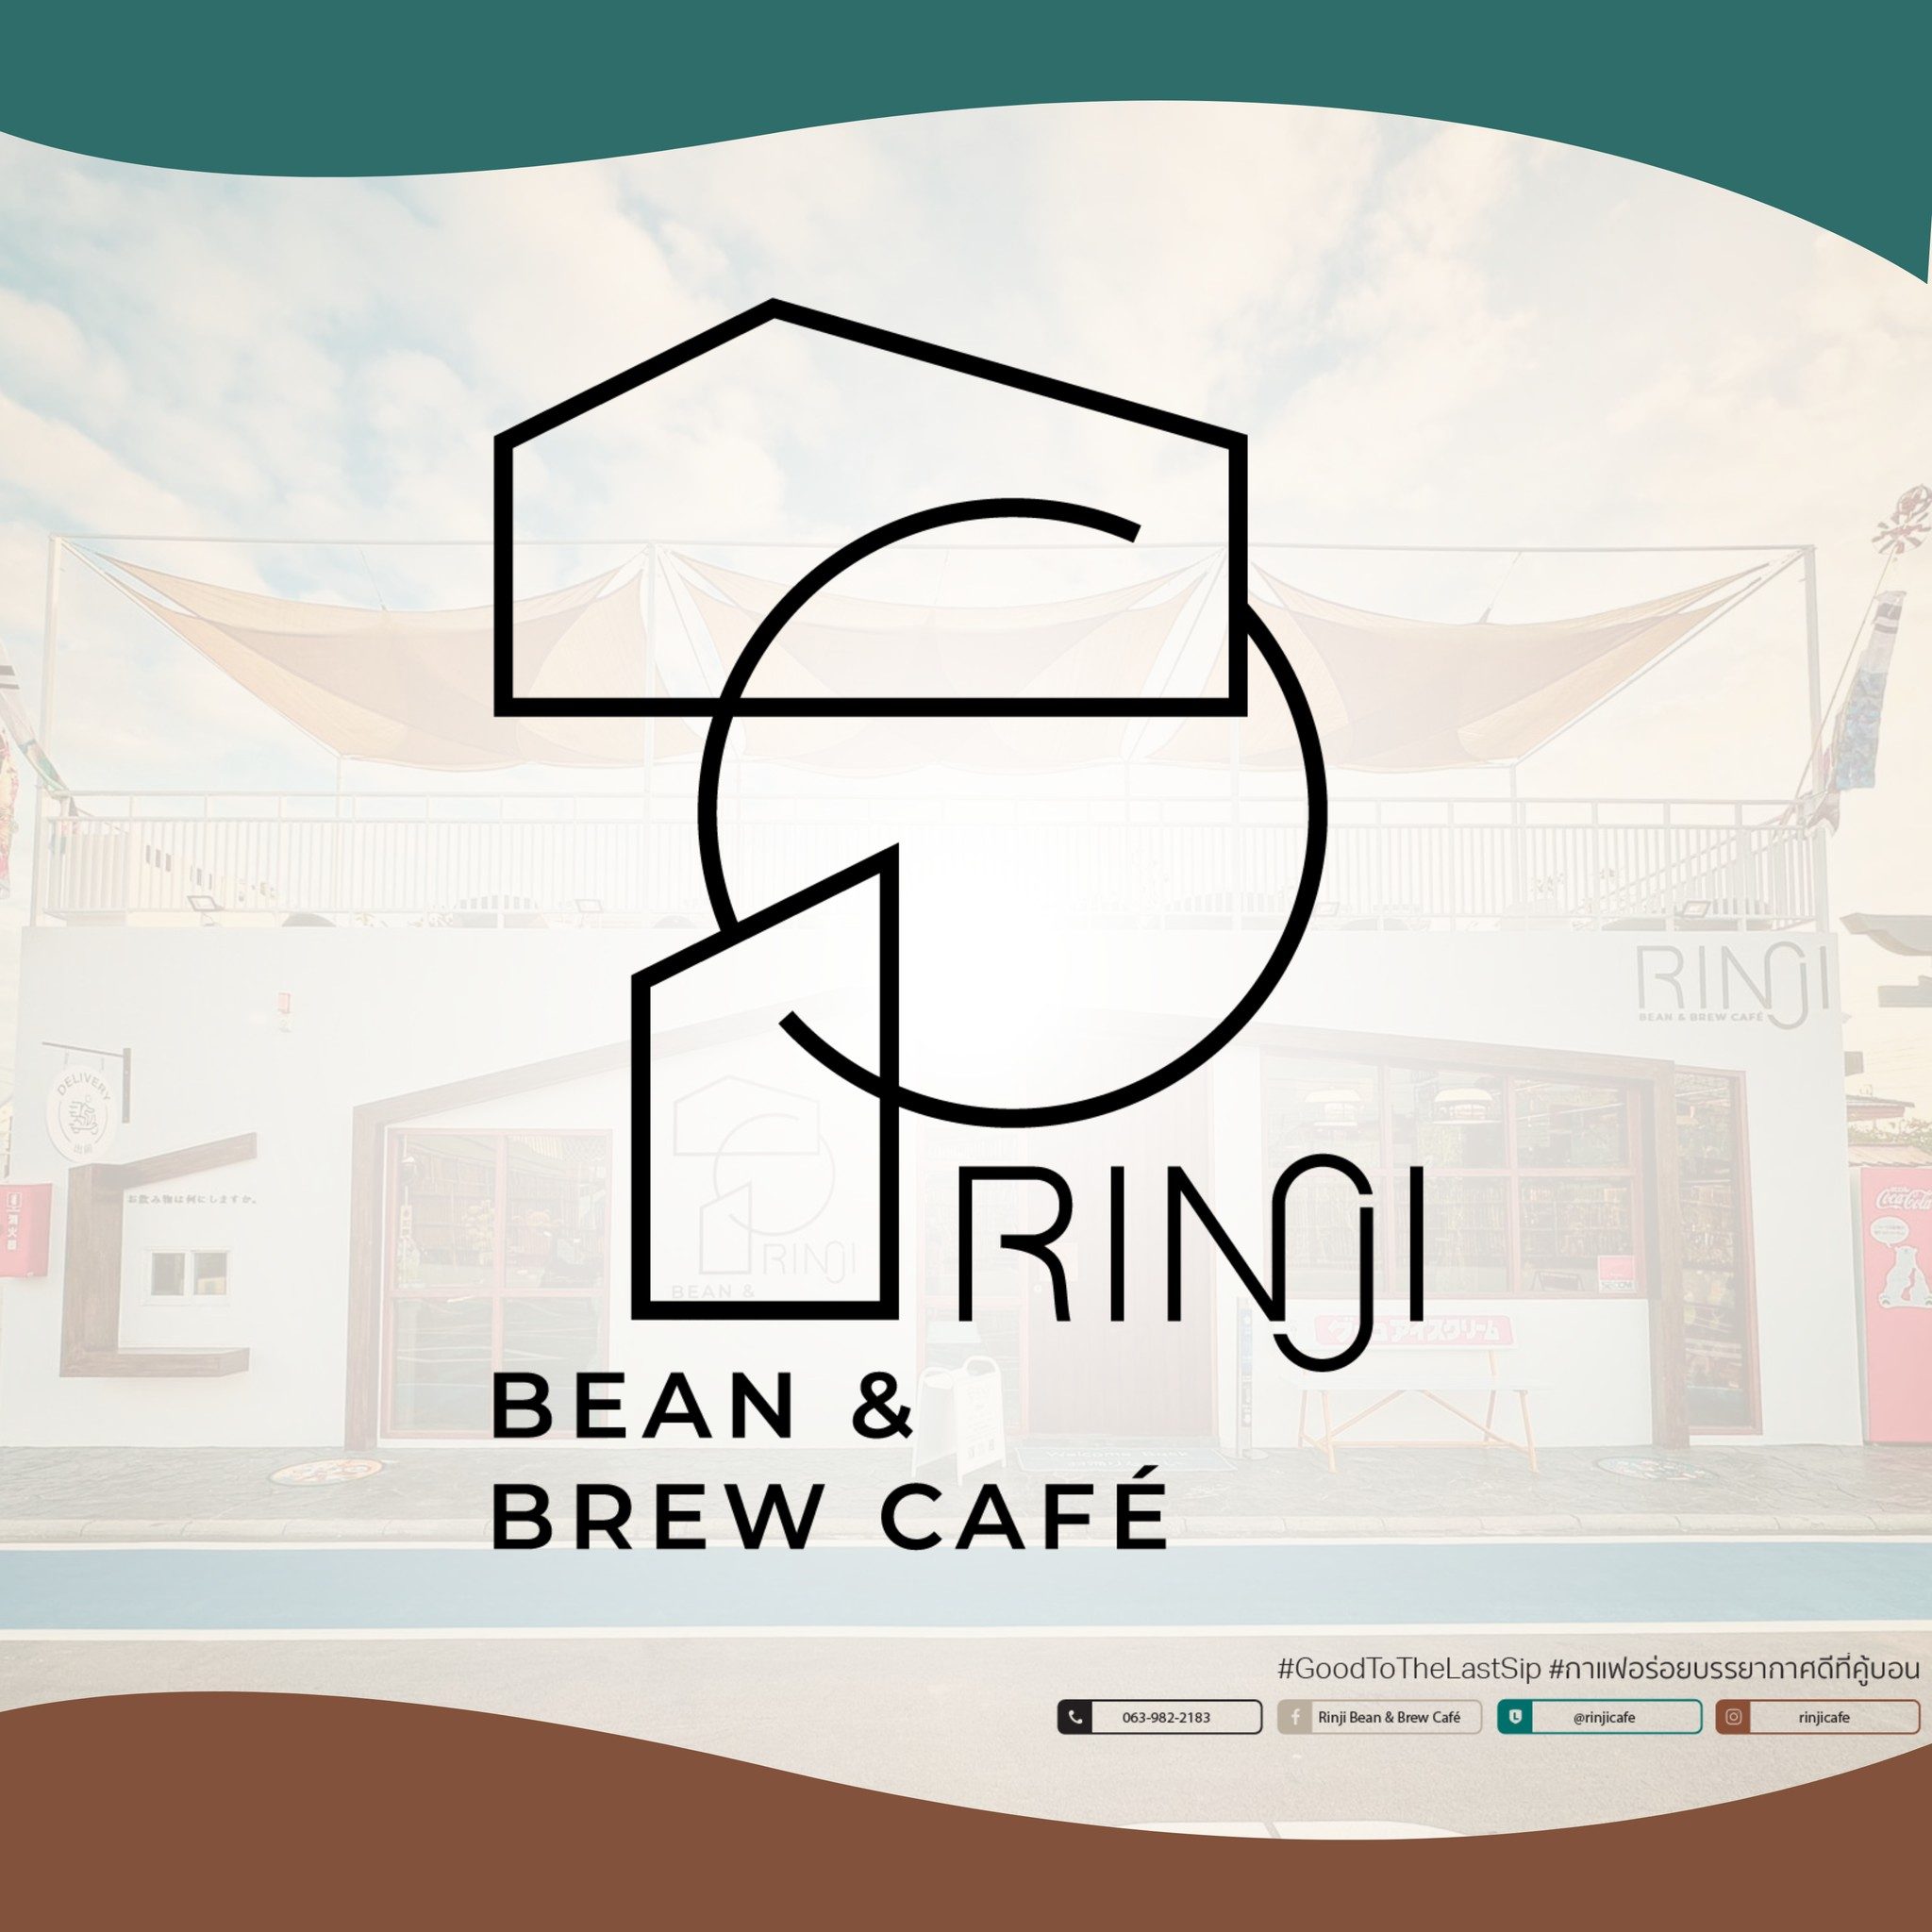 Rinji Bean & Brew Cafe